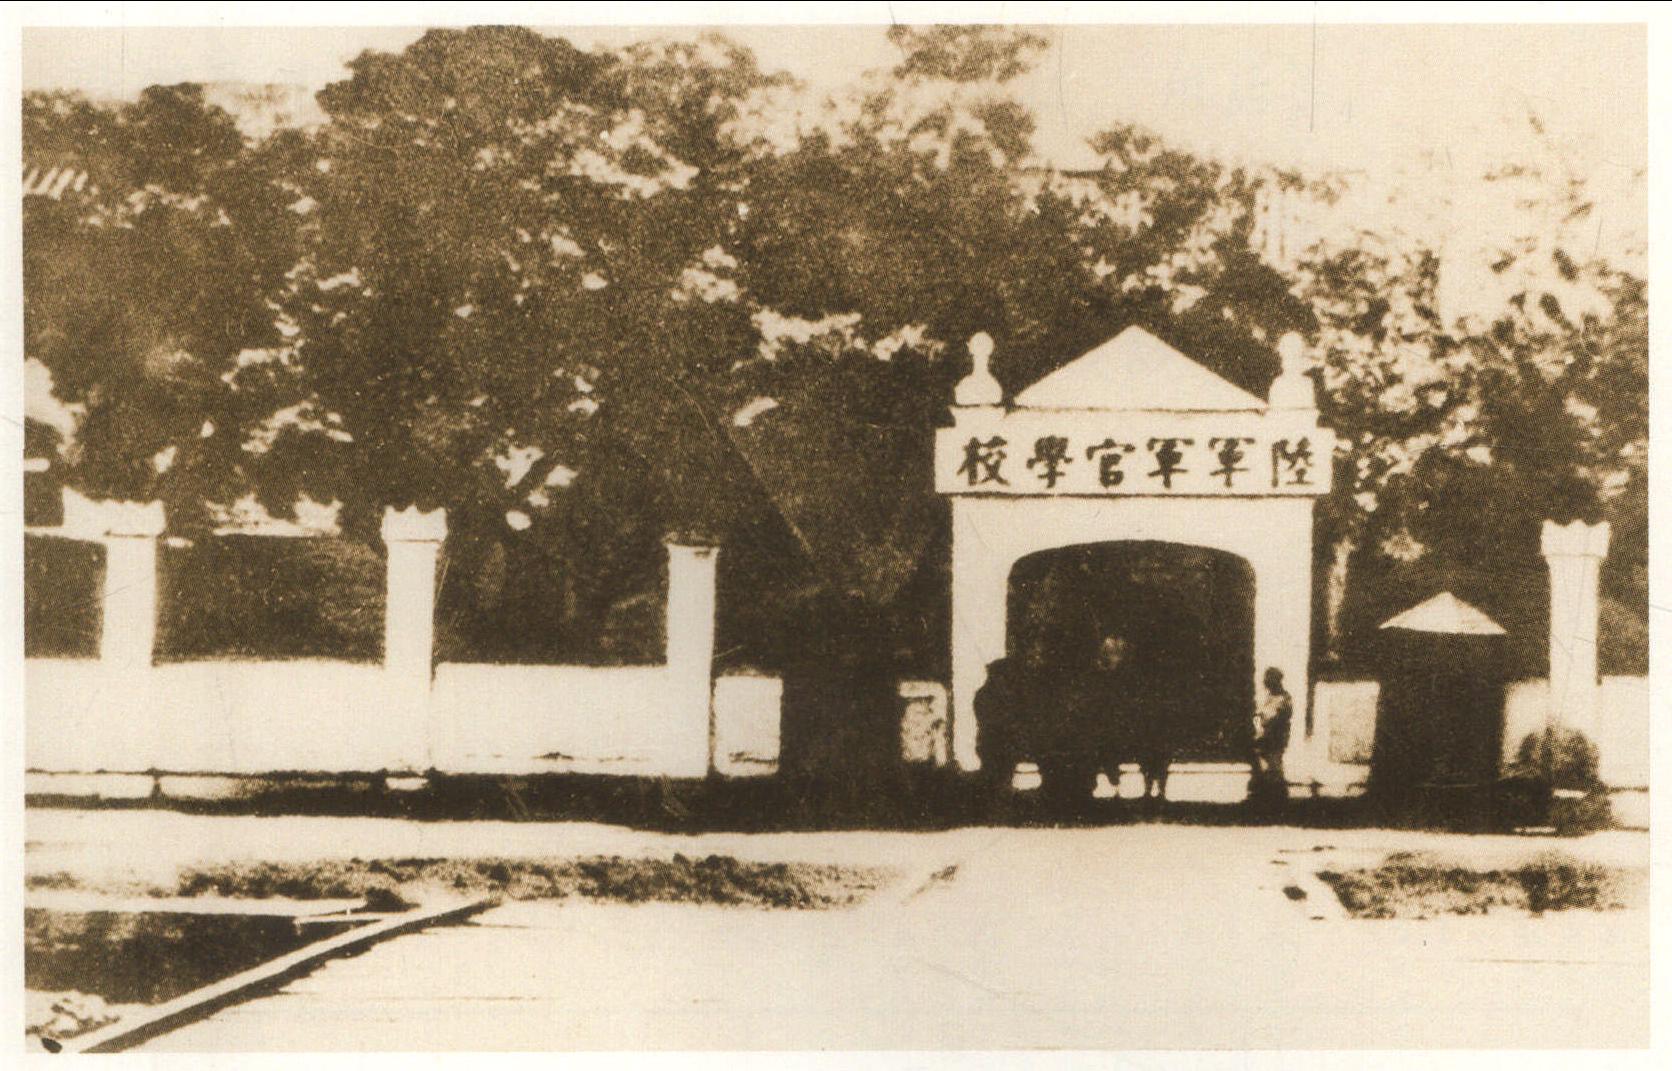 1924年6月， 国共两党合作在广州附近黄埔长洲岛创办了 “中国国民党陆军军官学校” (简称黄埔军校)。 图为黄埔军校旧址。